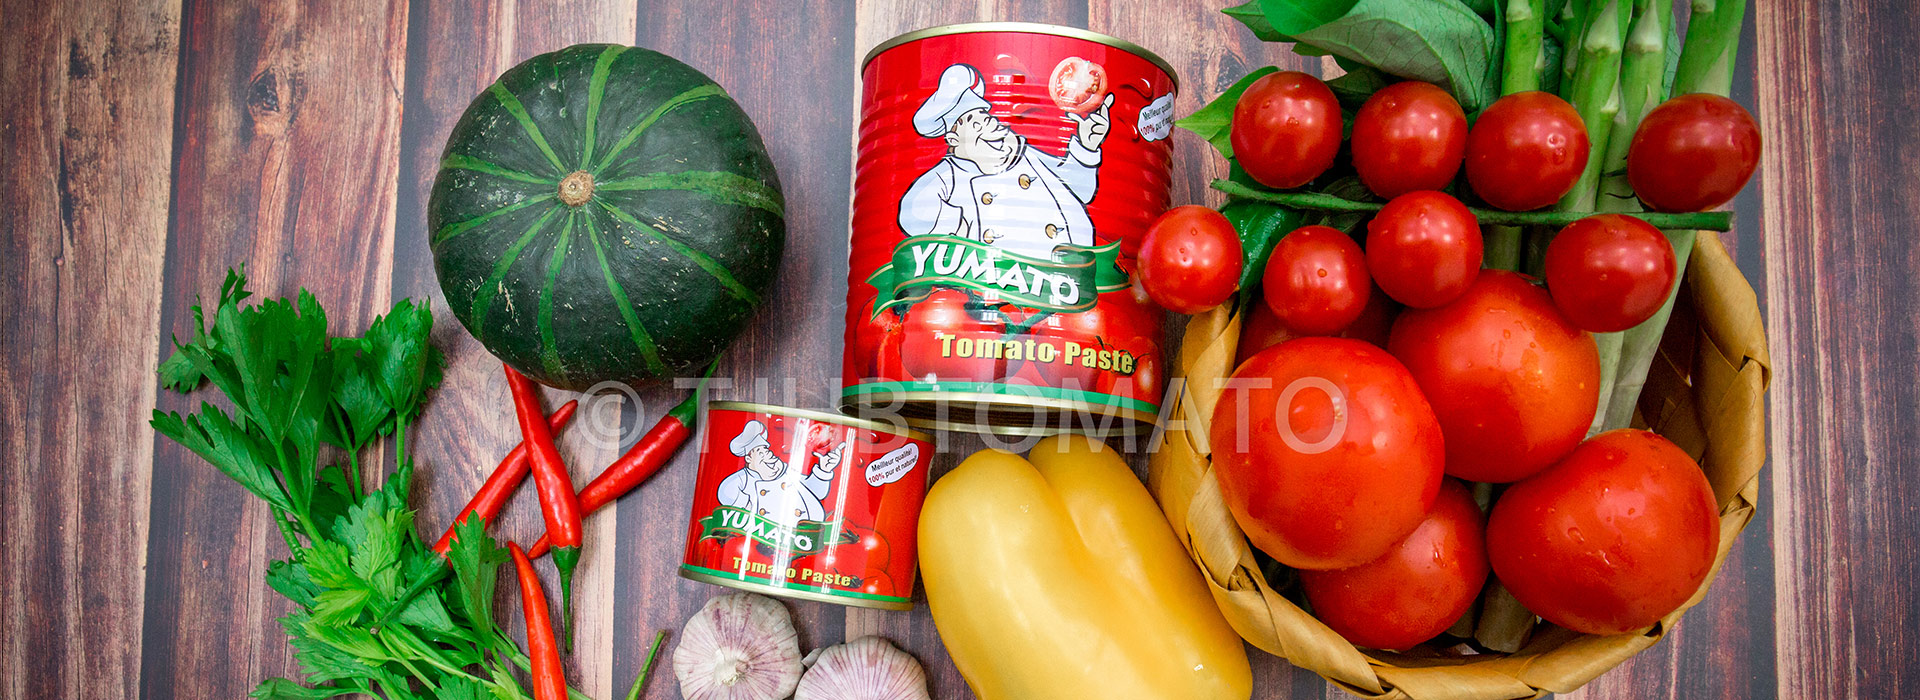 天津市红宝番茄制品有限公司